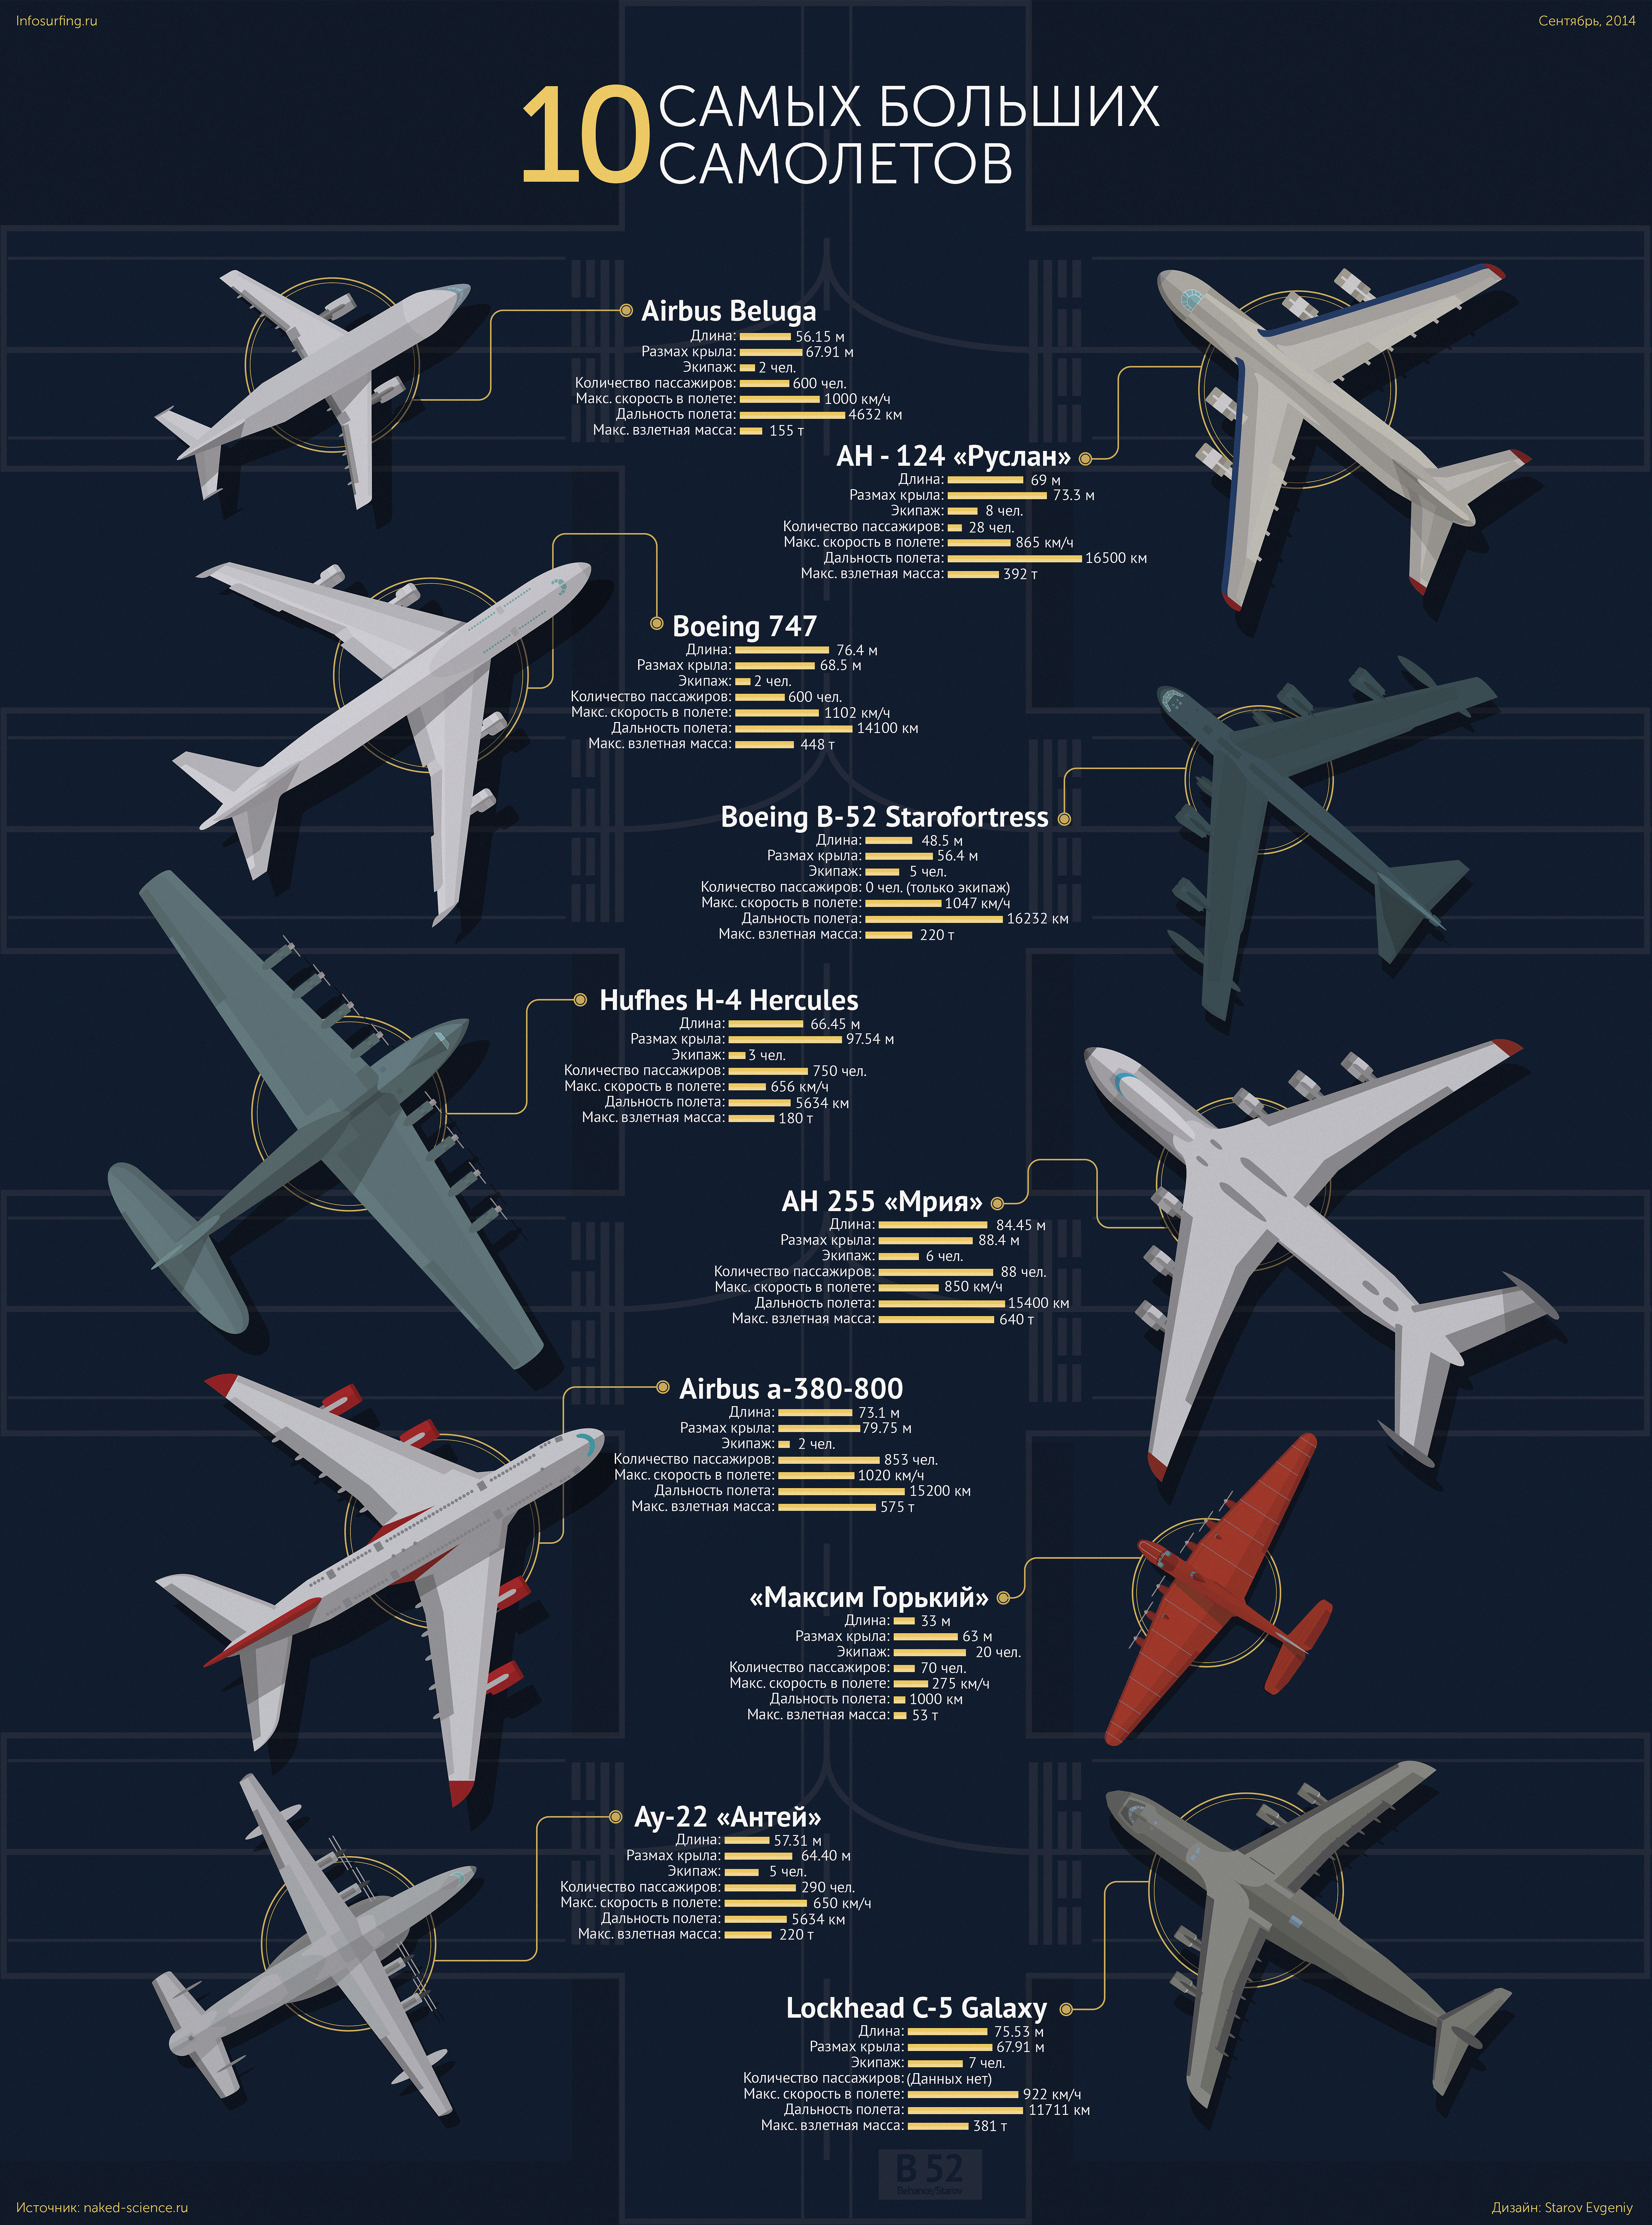 Топ 10 самых больших самолетов